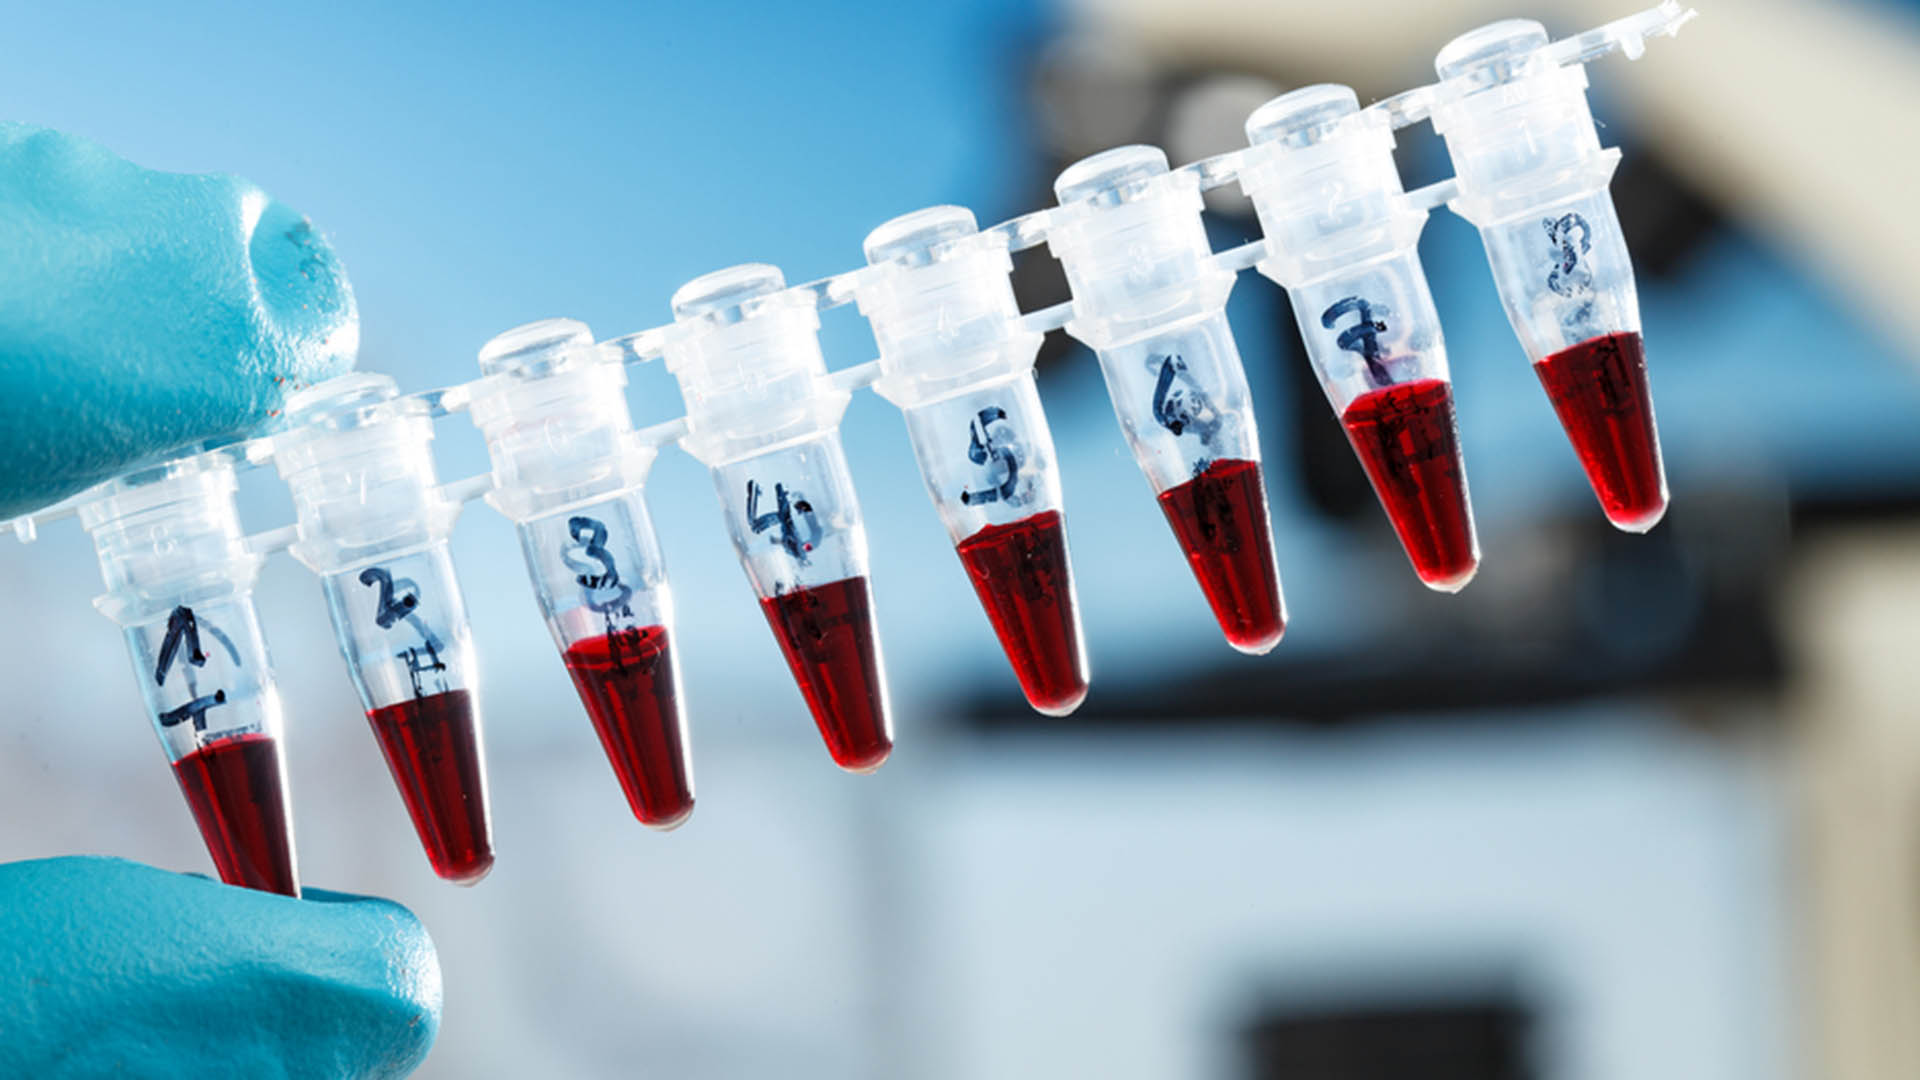 PCR tüpü ile santrifüj tüpü arasındaki fark nedir?